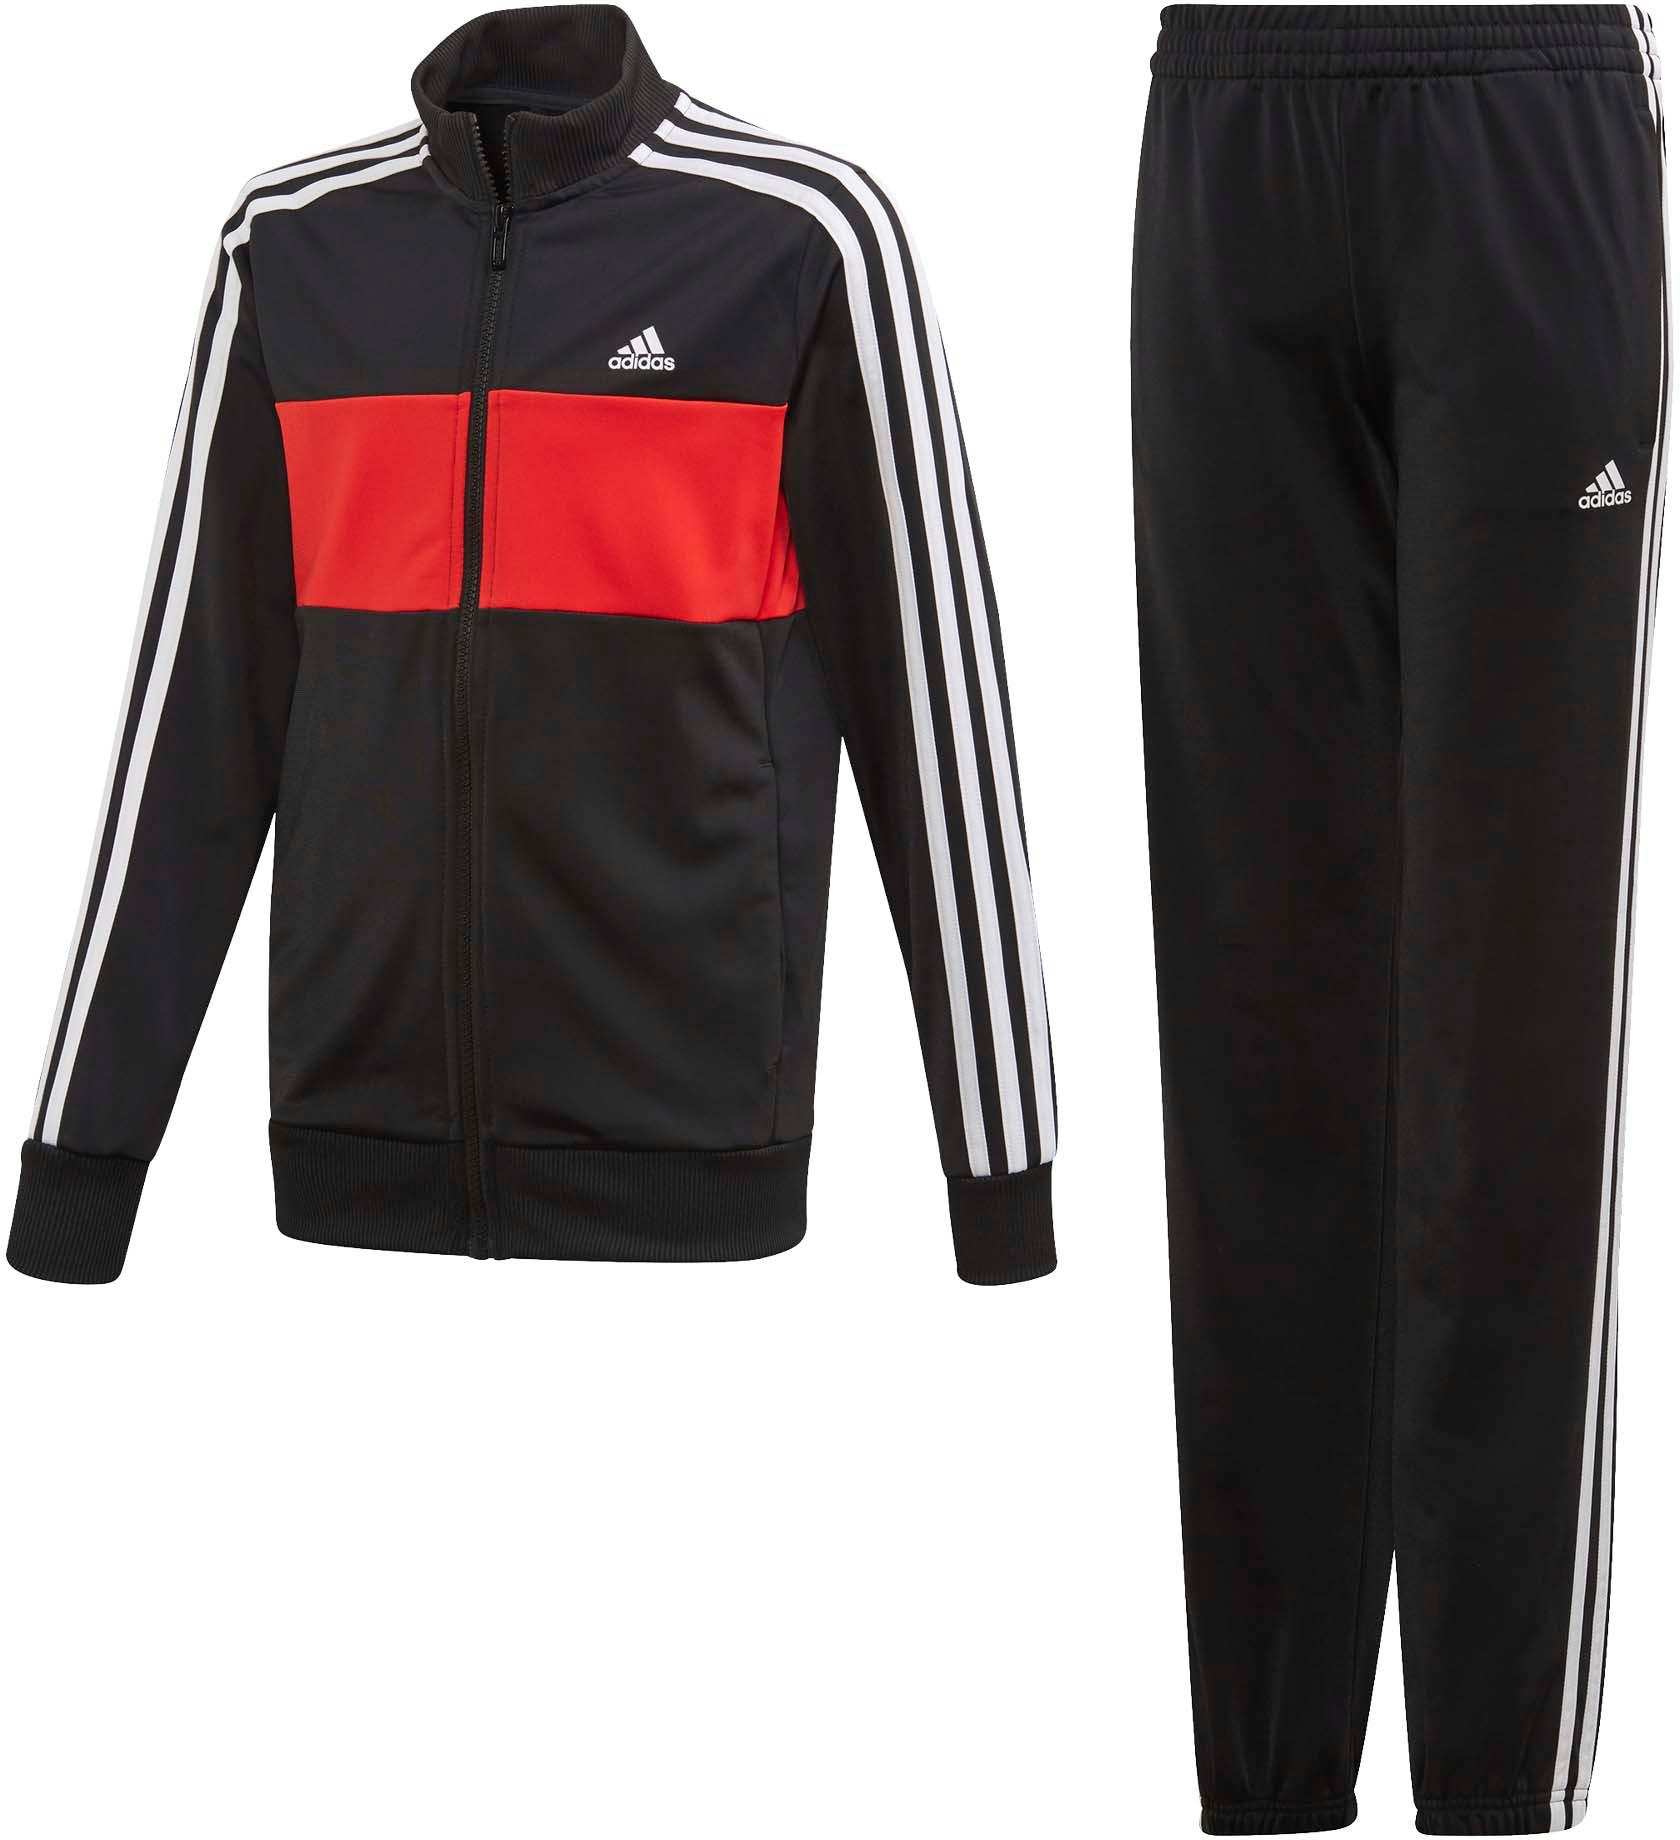 Адидас спортивный костюм размер. Adidas Tracksuit Black. Спортивный костюм adidas (a433). Костюм спортивный adidas fm6840. Спортивках адидас красная.